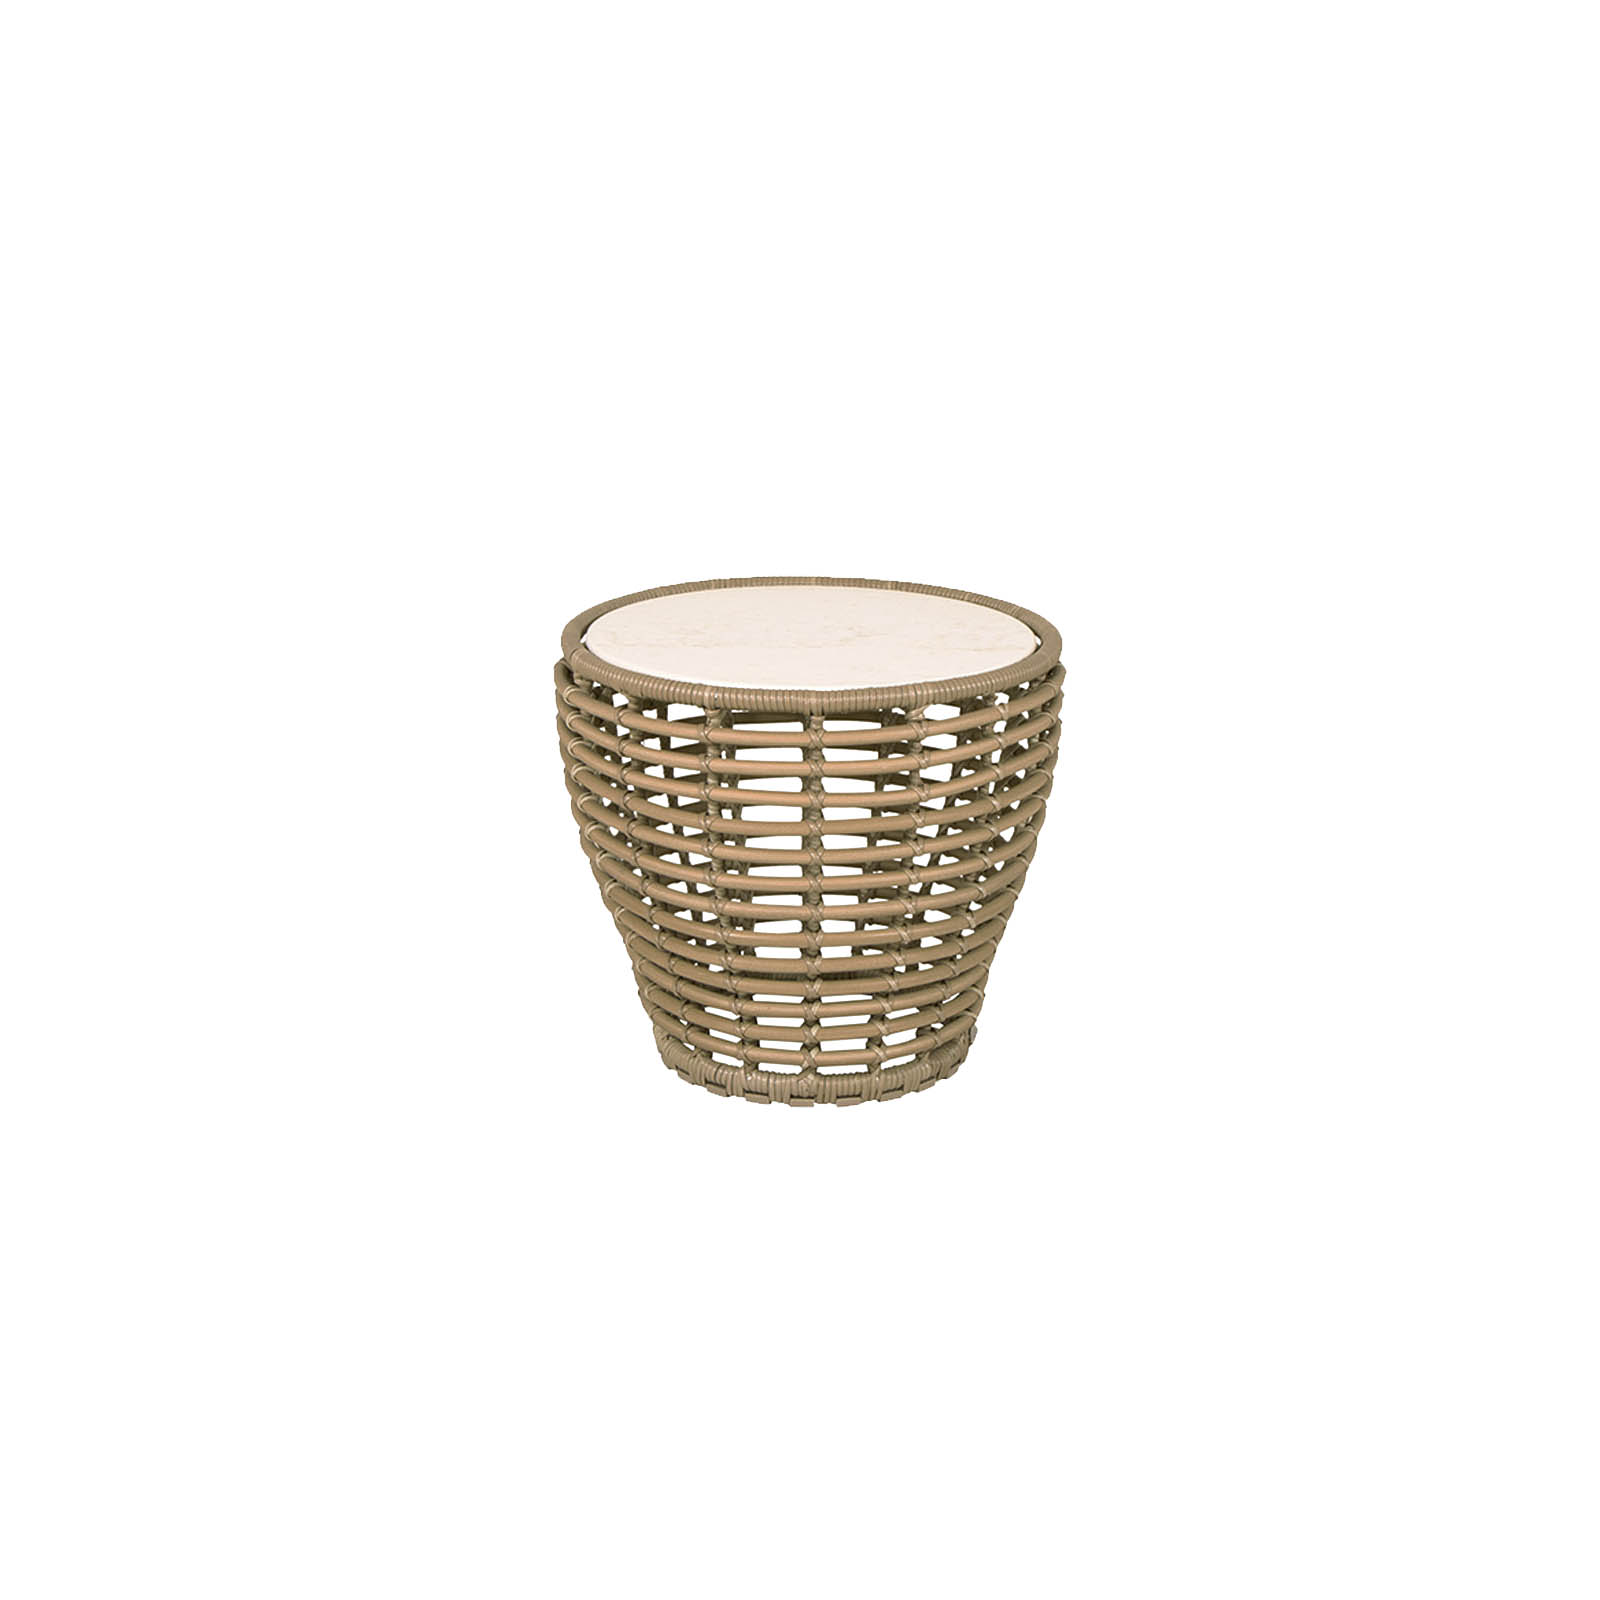 Basket Couchtisch klein aus Cane-line Weave in Natural mit Tischplatte aus Ceramic in Travert